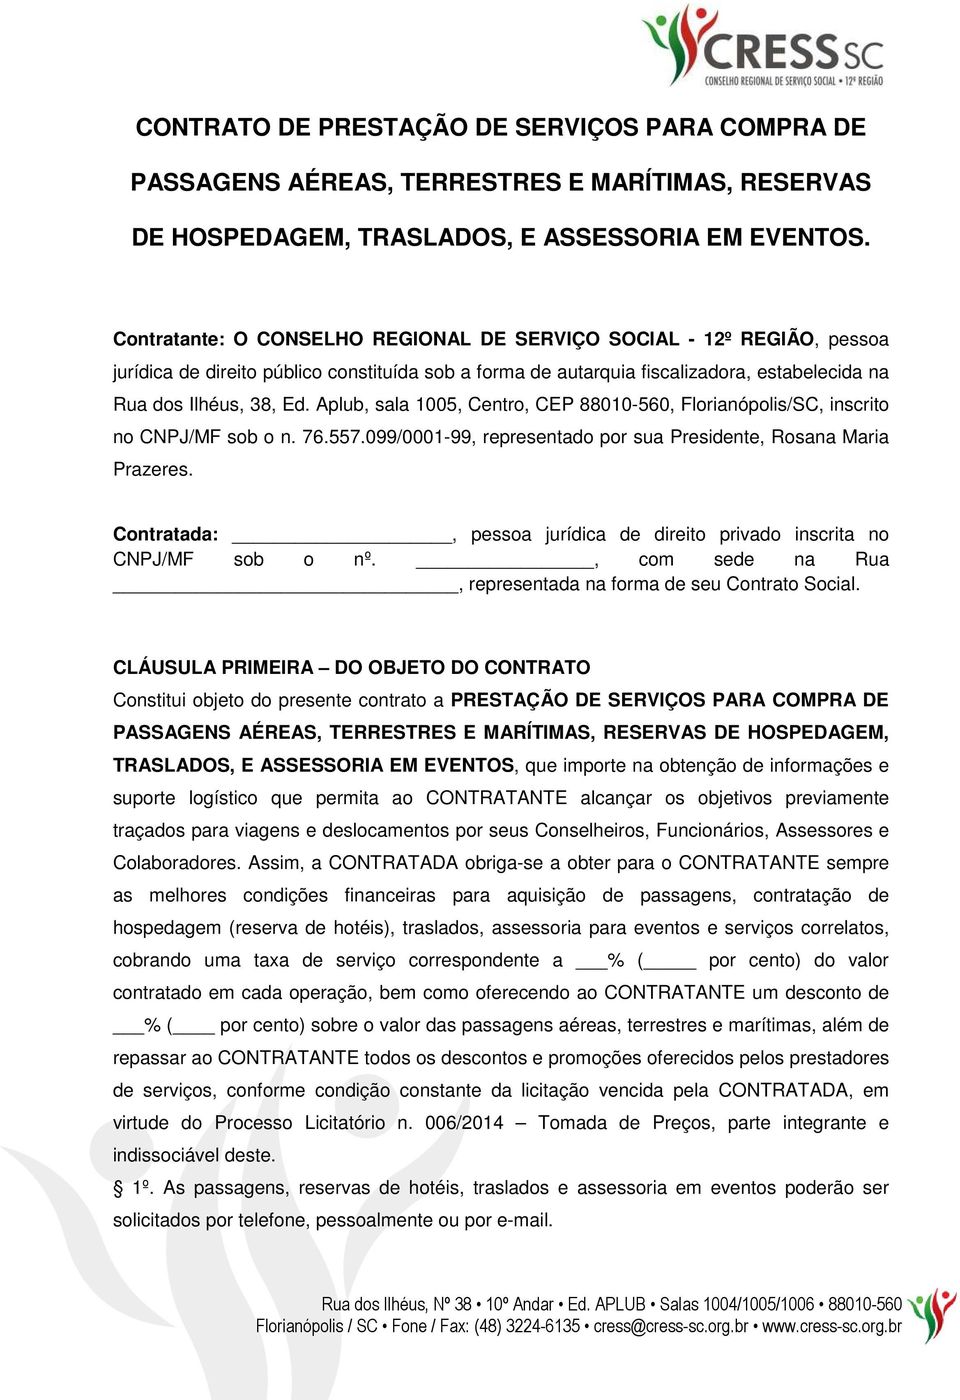 Aplub, sala 1005, Centro, CEP 88010-560, Florianópolis/SC, inscrito no CNPJ/MF sob o n. 76.557.099/0001-99, representado por sua Presidente, Rosana Maria Prazeres.